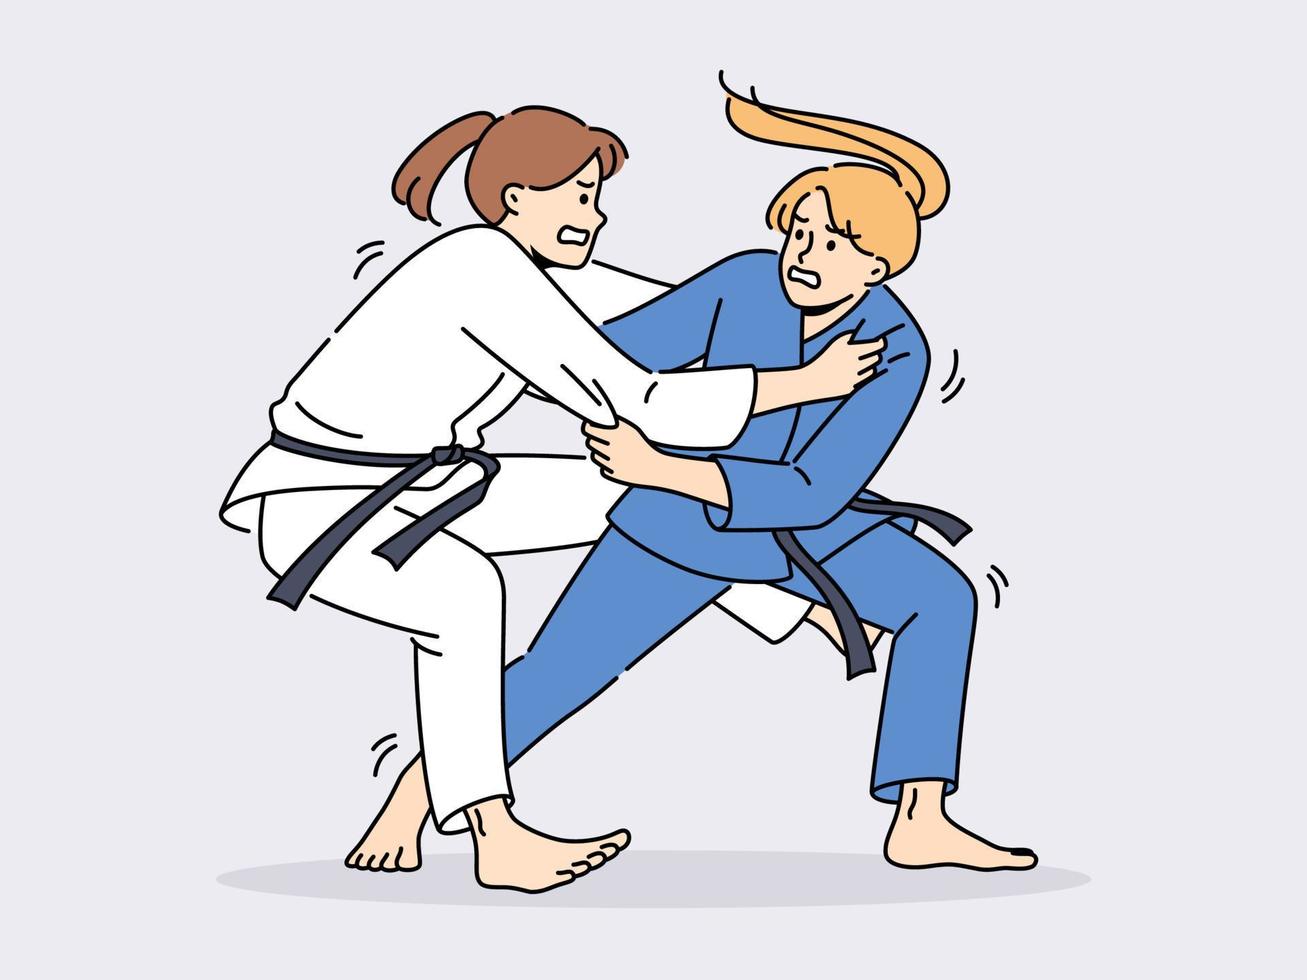 kvinnor i karate kimonos stridande på ringa. kvinna idrottare i enhetlig involverad i krigisk konst. sport och konkurrens. vektor illustration.